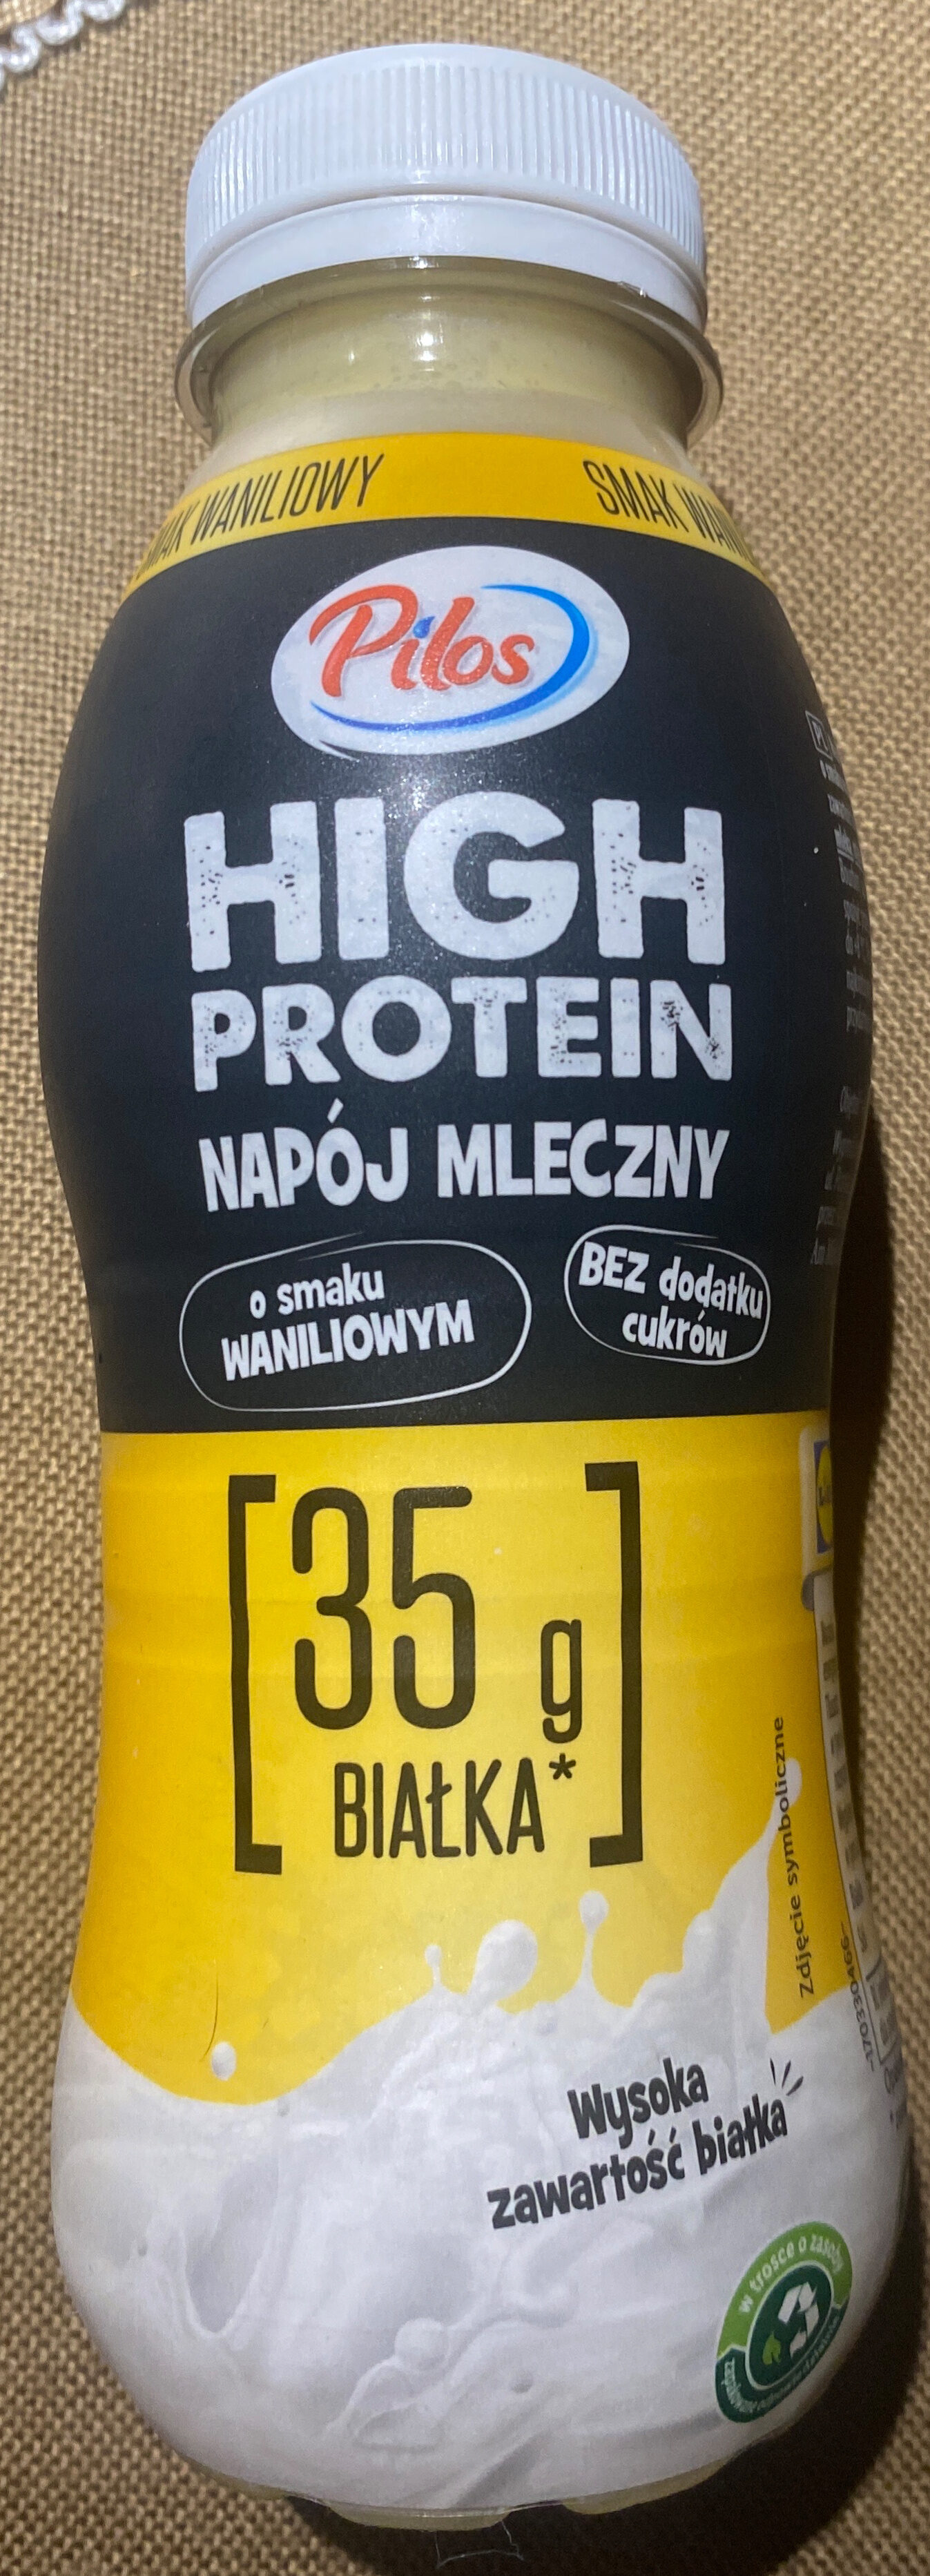 High Protein Napój mleczny - wanilia - Produto - pl